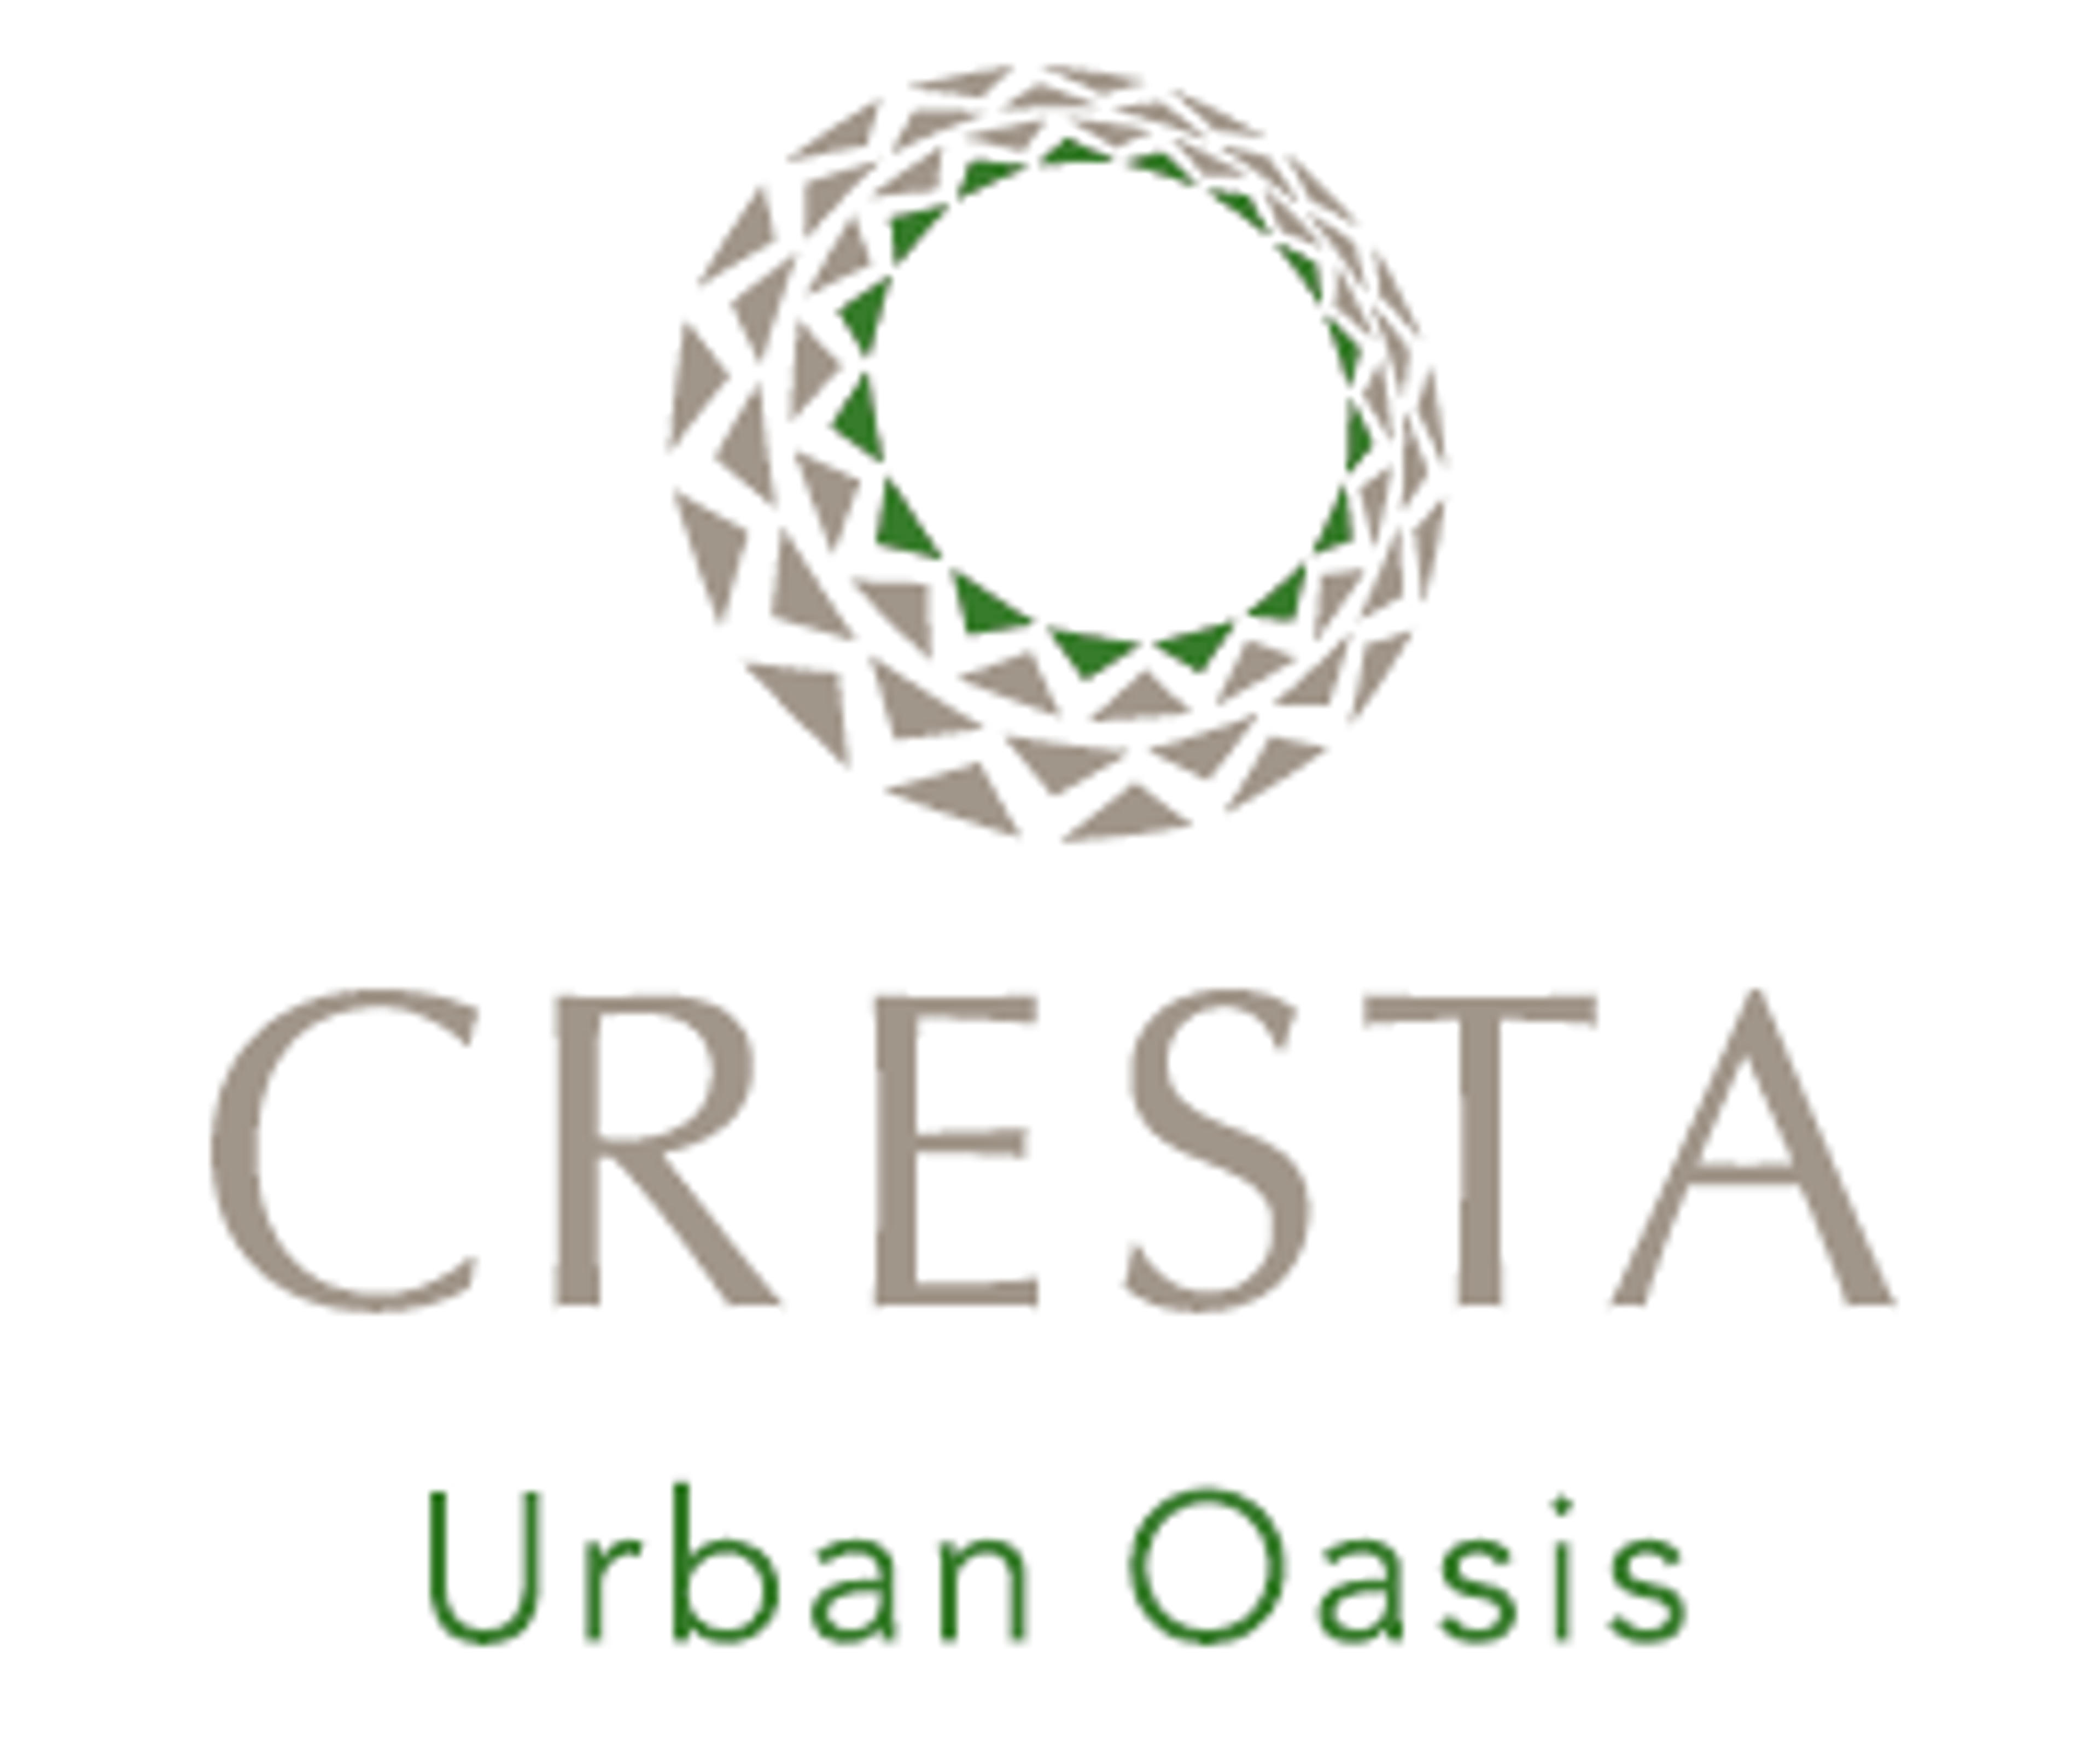 Cresta Gateway Logos Urban Oasis